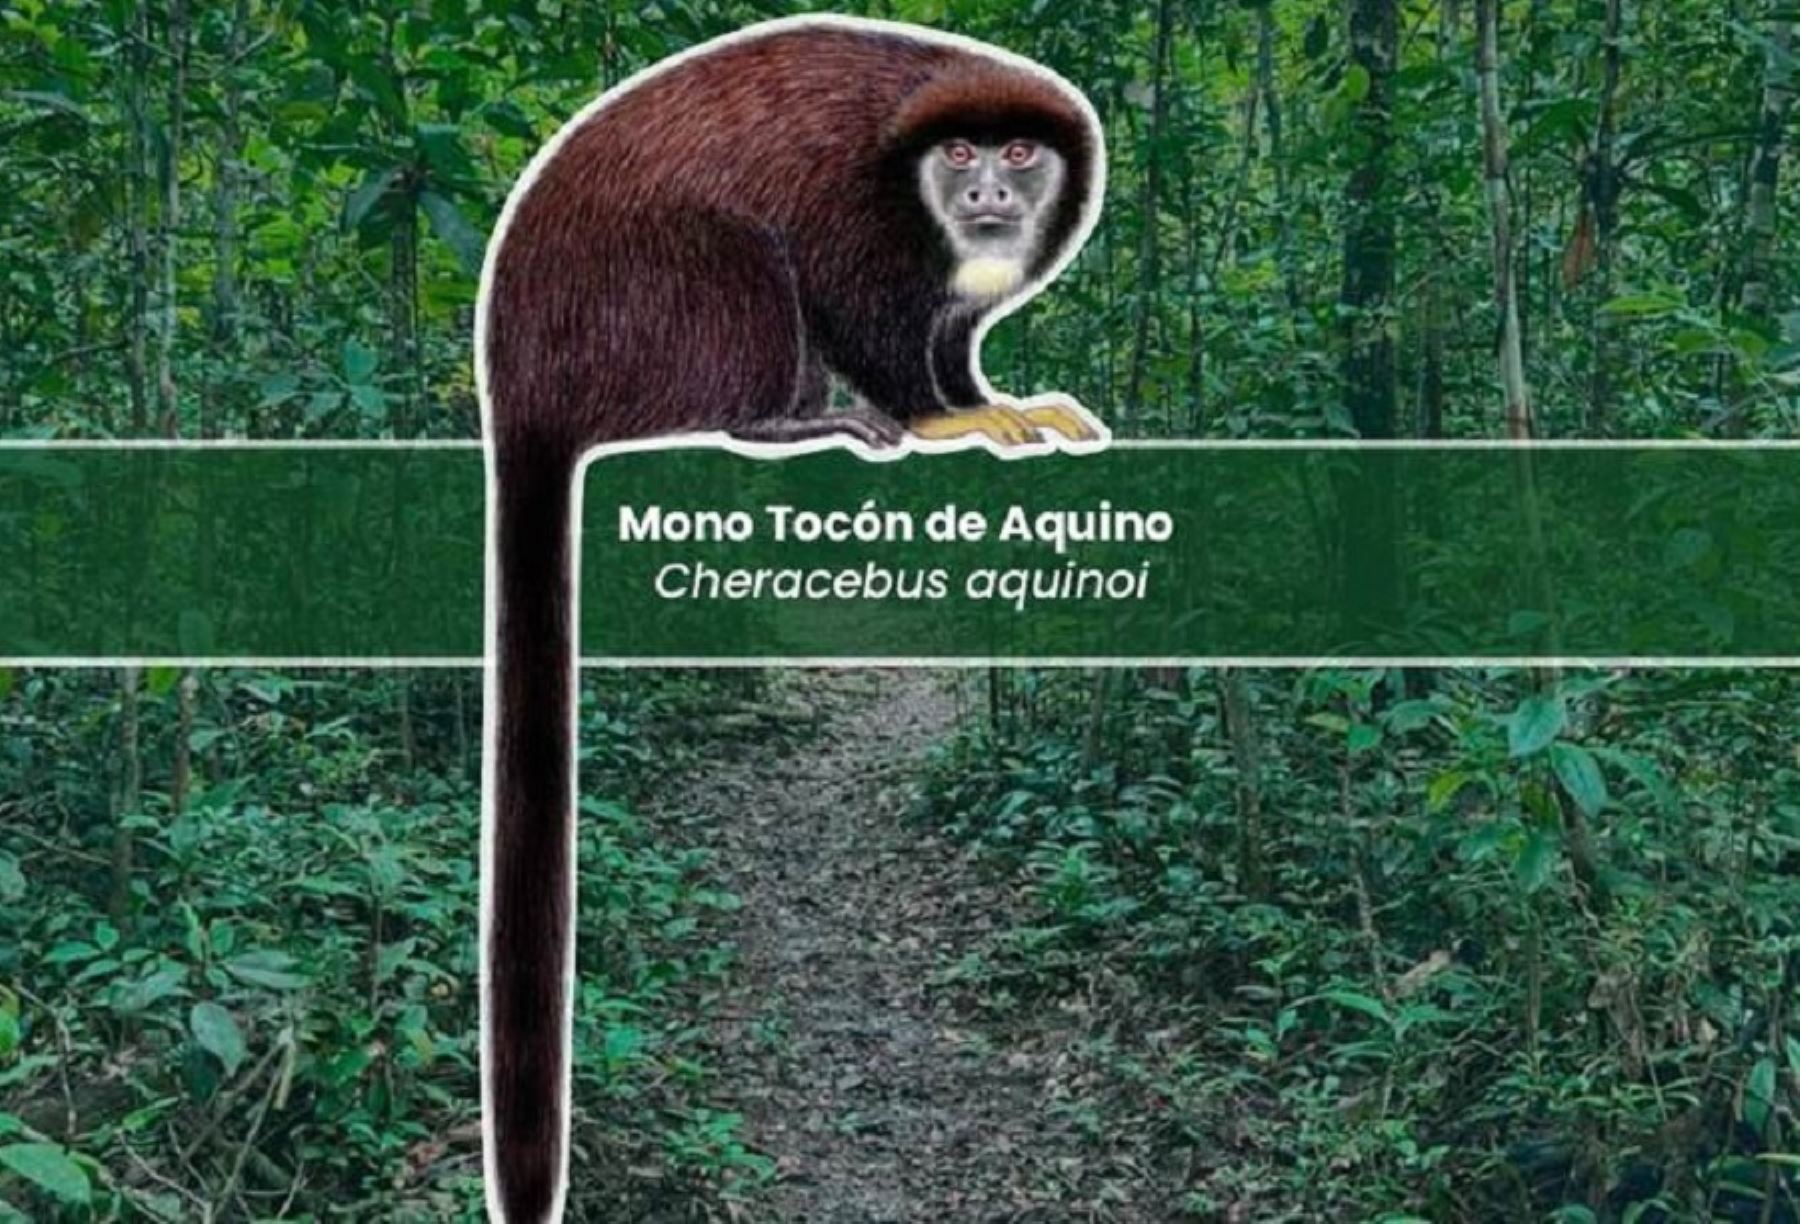 Mono tocón de Aquino (Cheracebus aquinoi) es el nombre de la nueva especie de primate descubierta por biólogos peruanos en el departamento de Loreto y que solo habita en un área restringida de los bosques de varillales y bosques ribereños, entre los ríos Nanay y Tigre, dentro de la Reserva Nacional Allpahuayo Mishana.